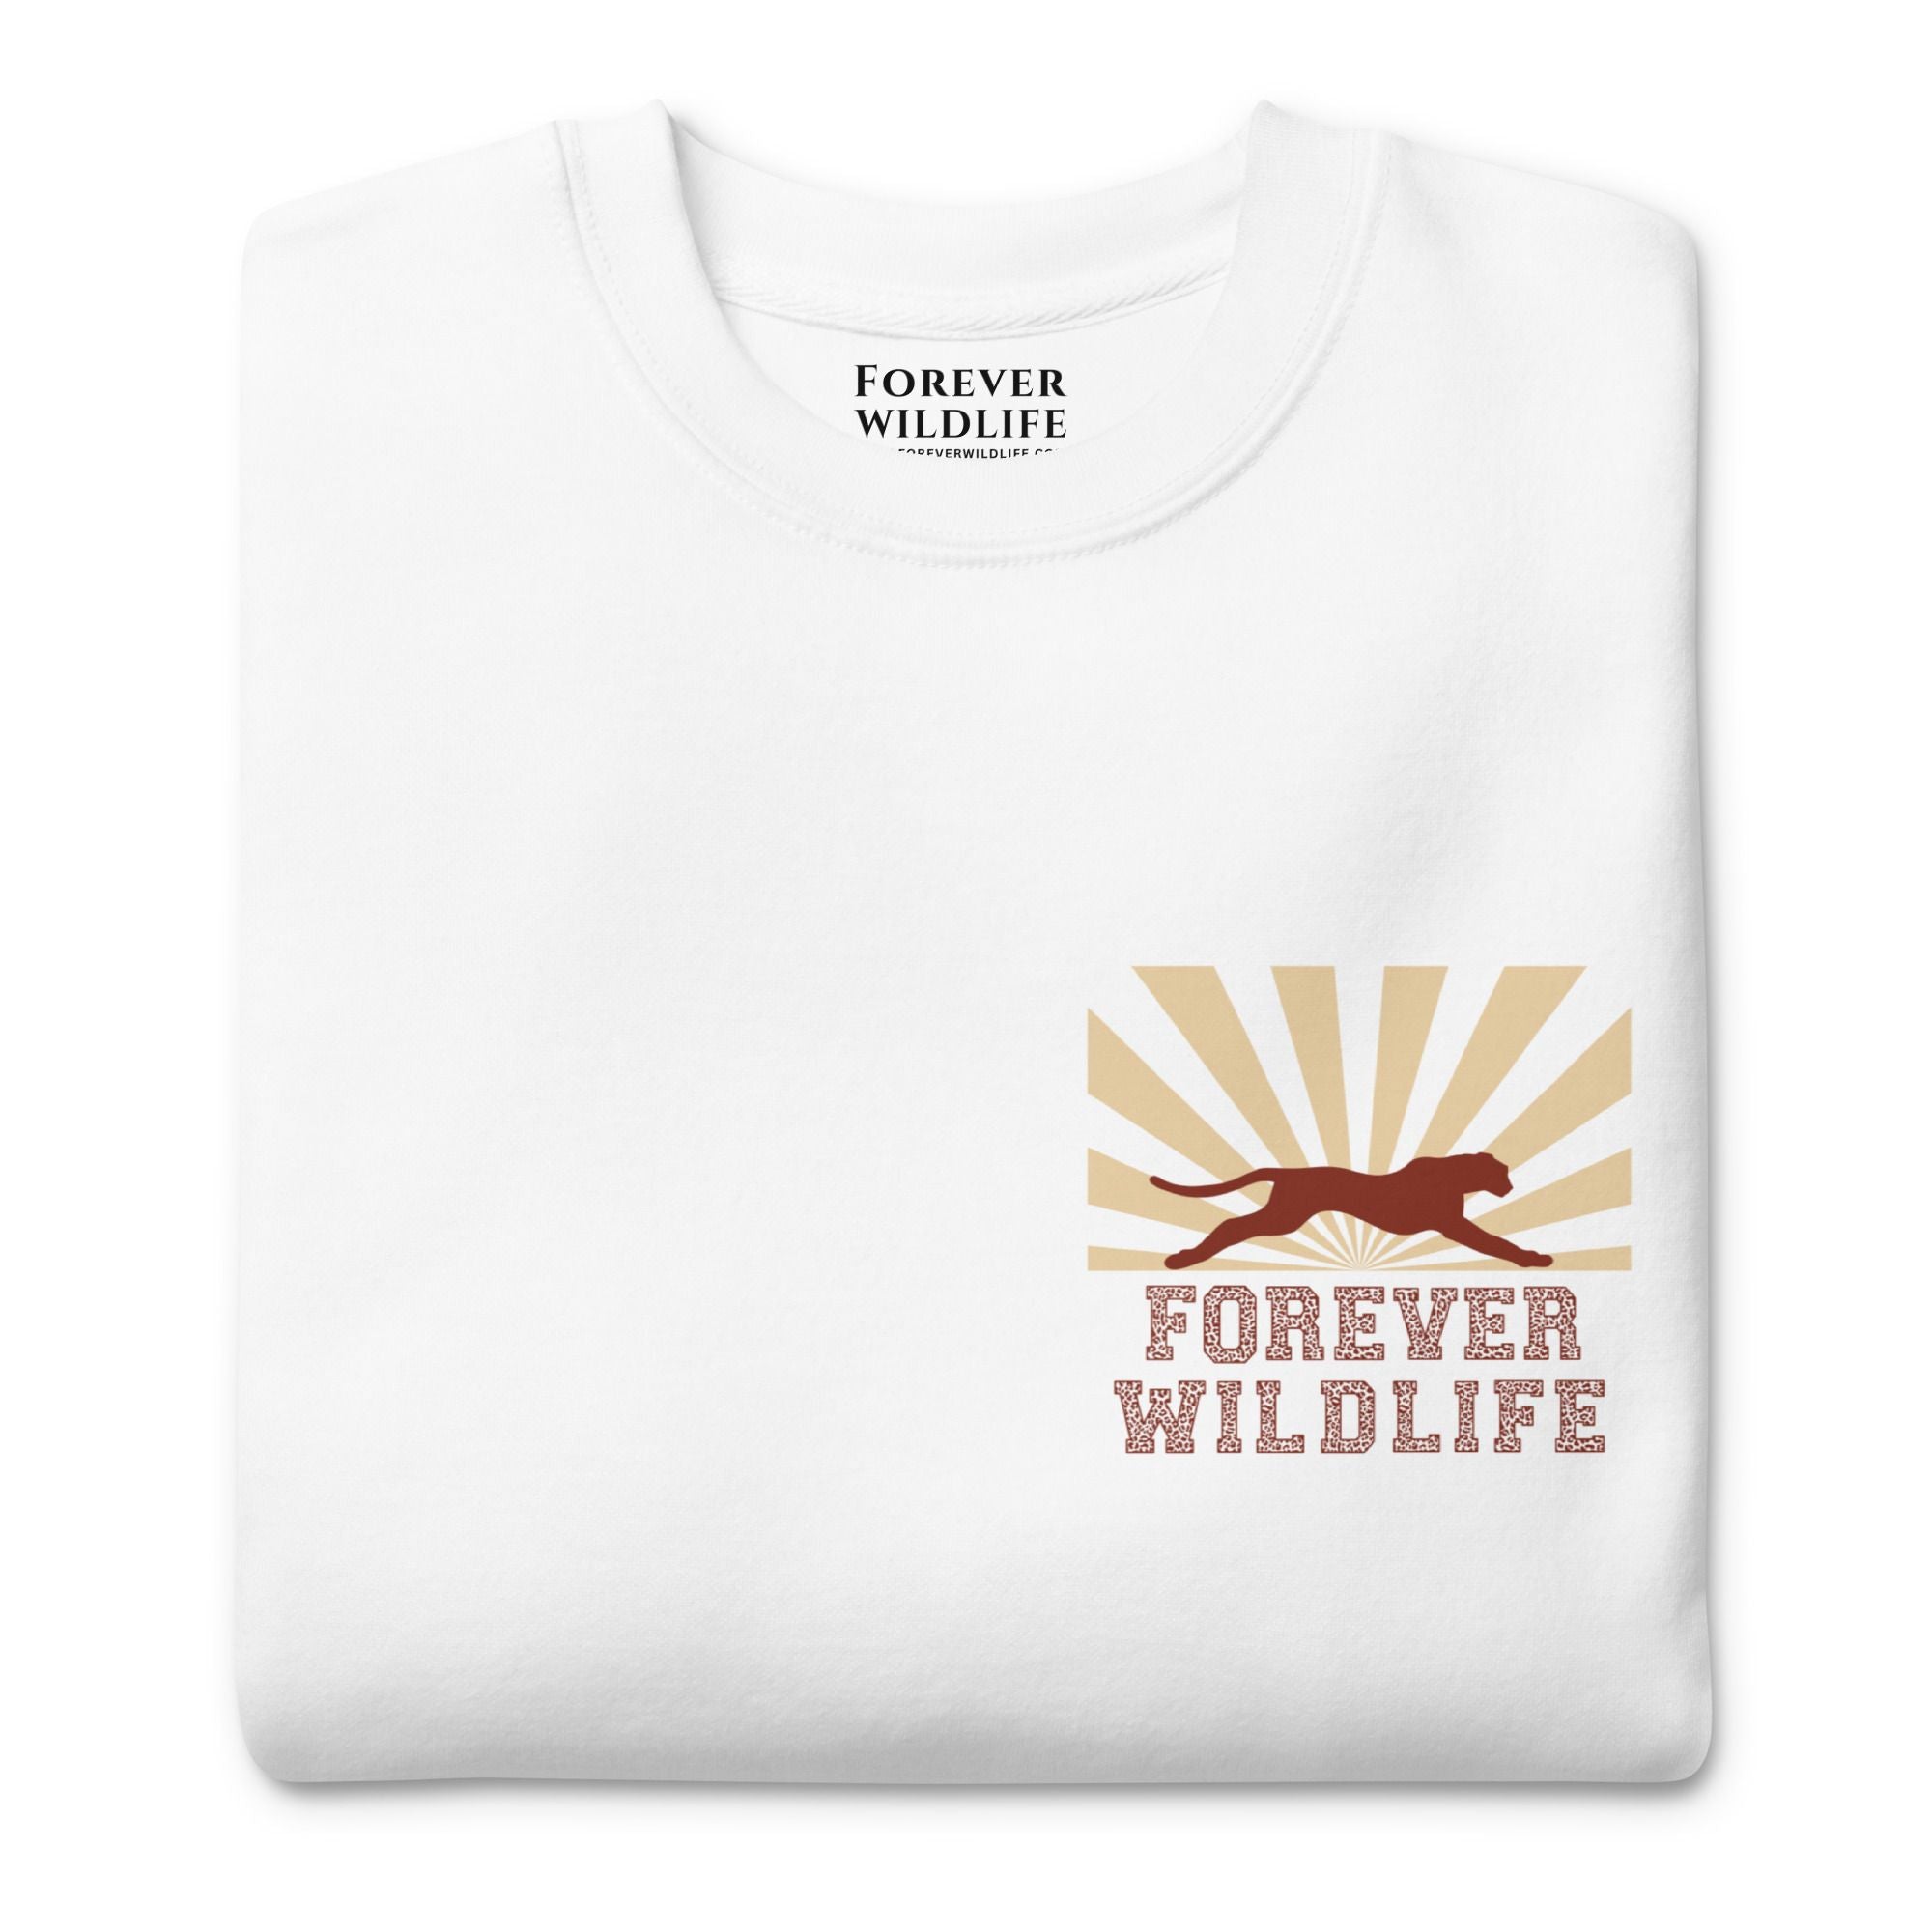 Cheetah Sweatshirt, beautiful white Cheetah sweatshirt with cheetah graphics made by Forever Wildlife Wildlife Sweatshirts.